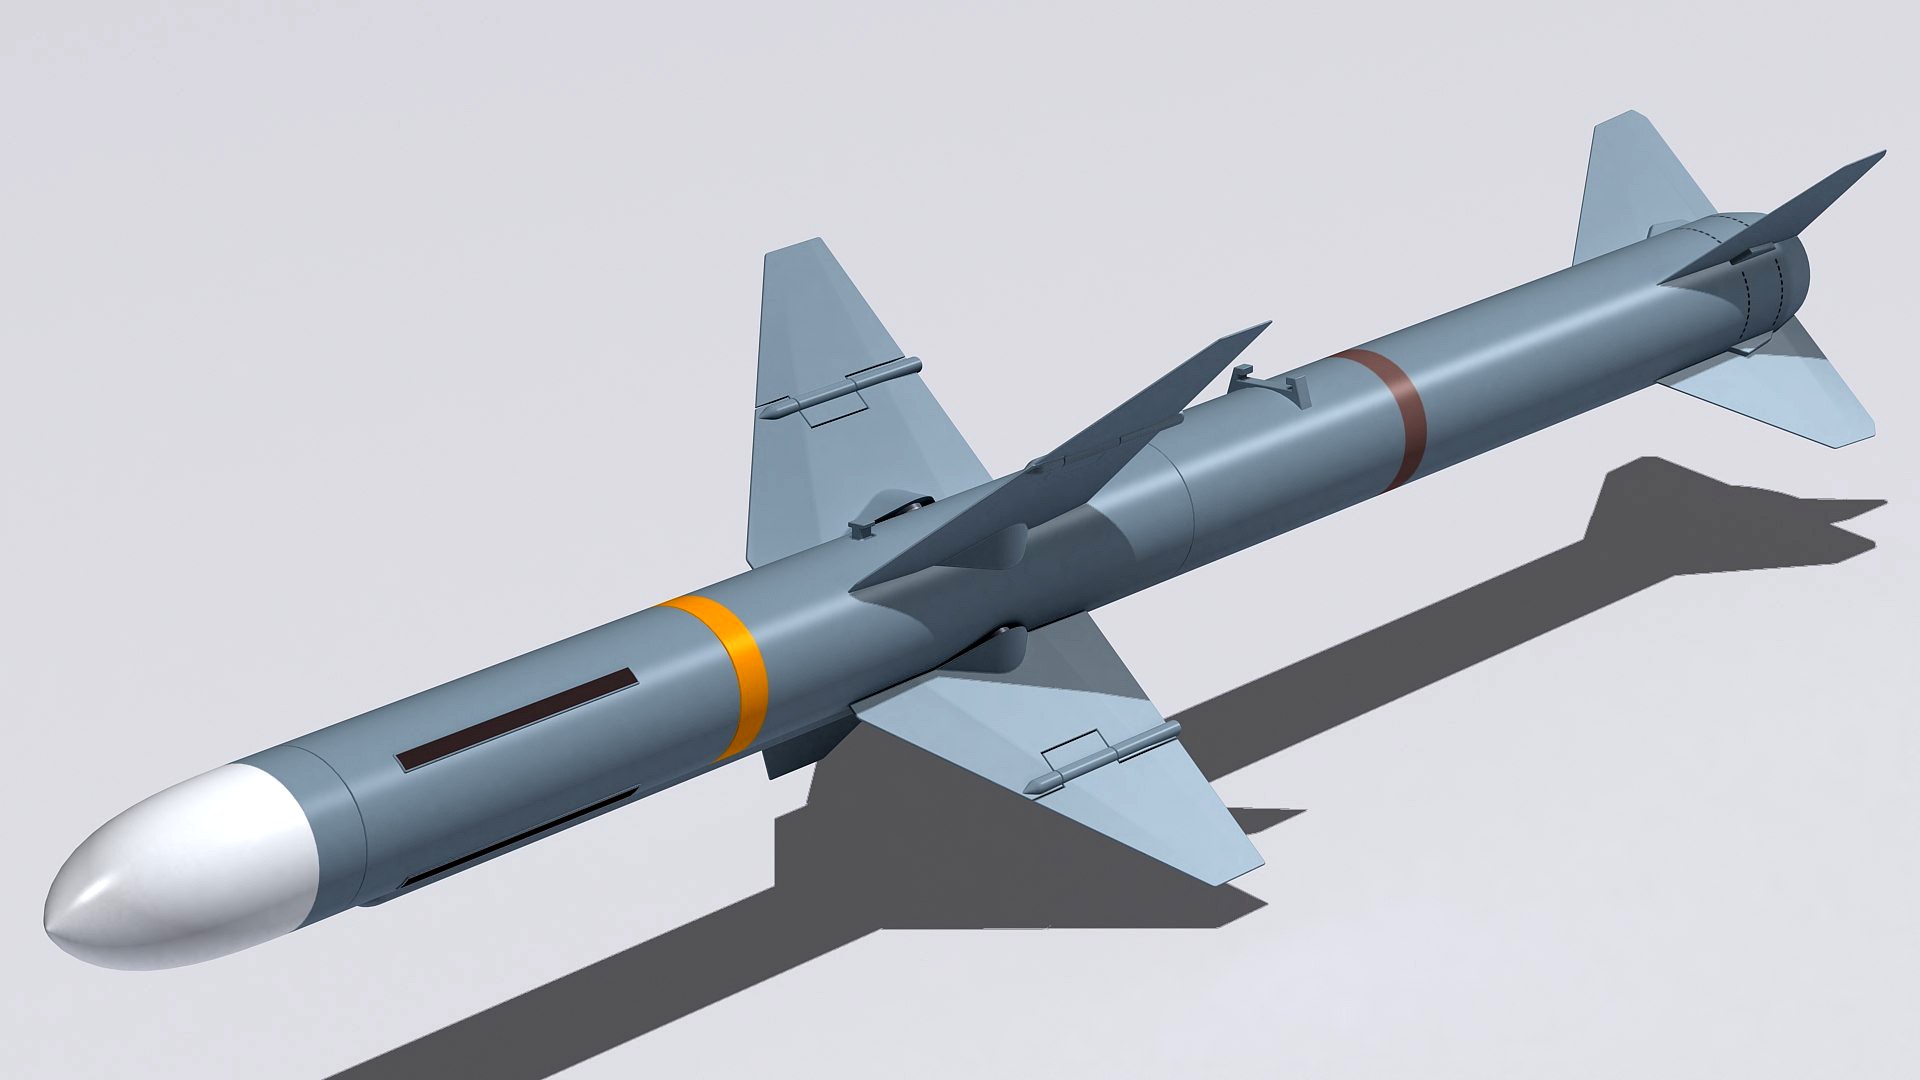 RIM-7 missile